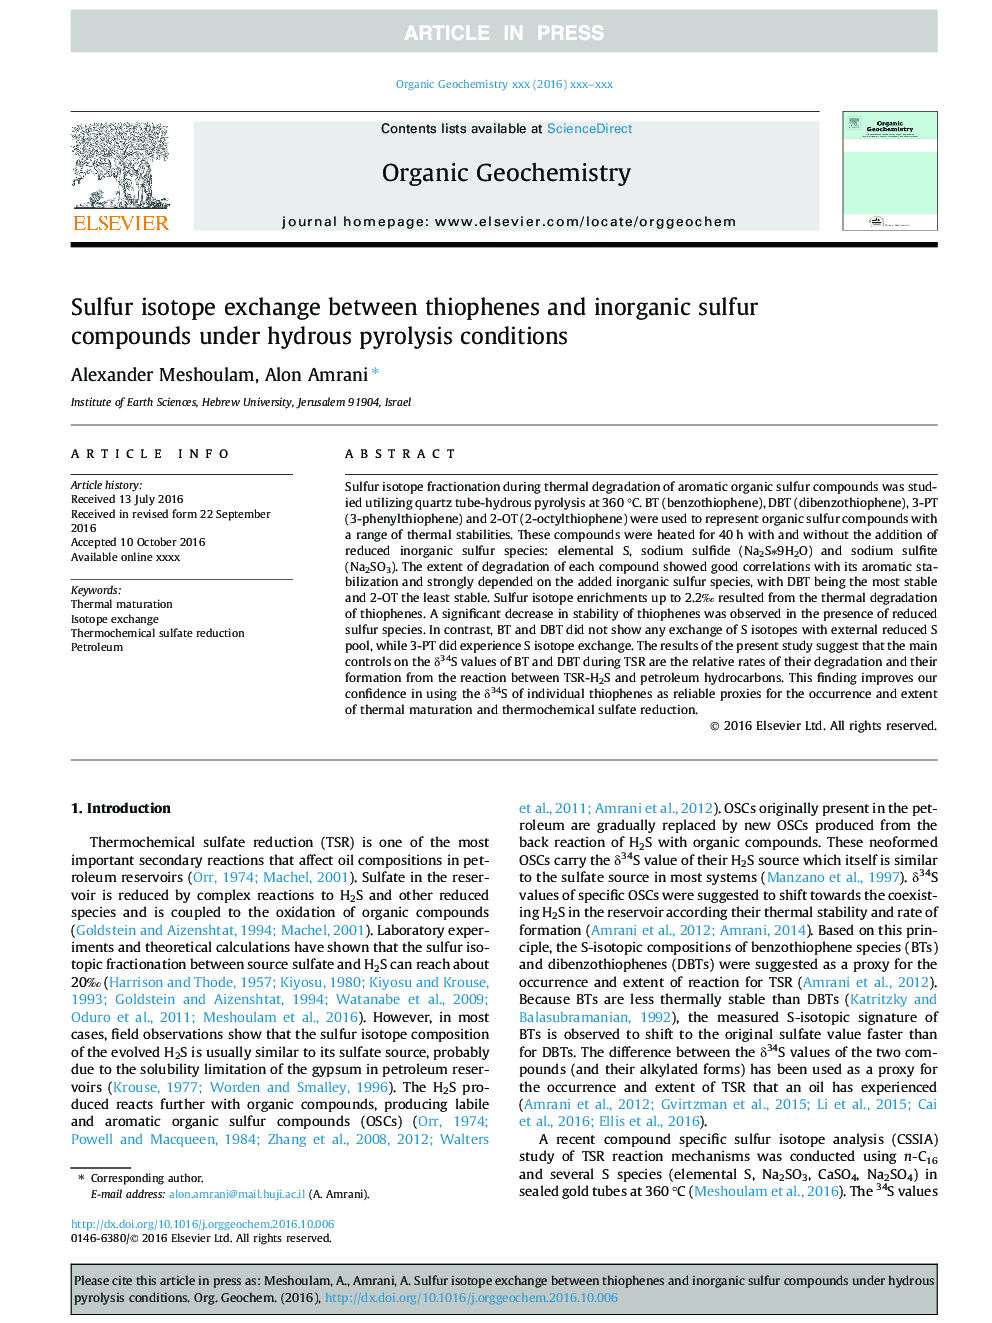 تبادل ایزوتوپی گوگرد بین تیوفن ها و ترکیبات گوگرددار معدنی تحت شرایط آیرودینامیک آبی 